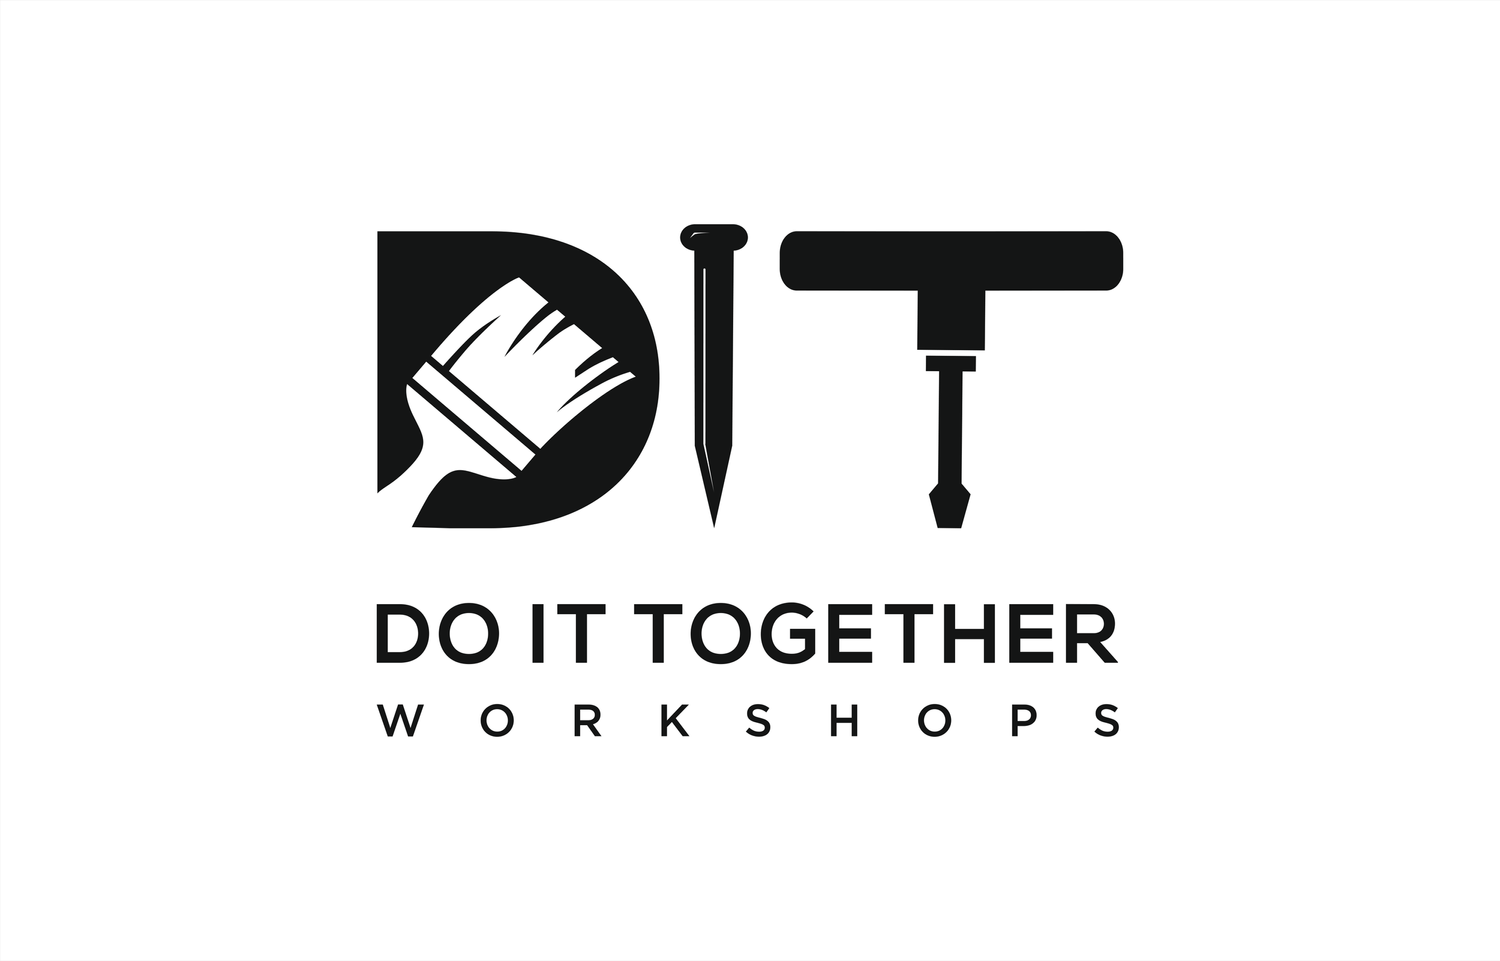 DIT Workshops